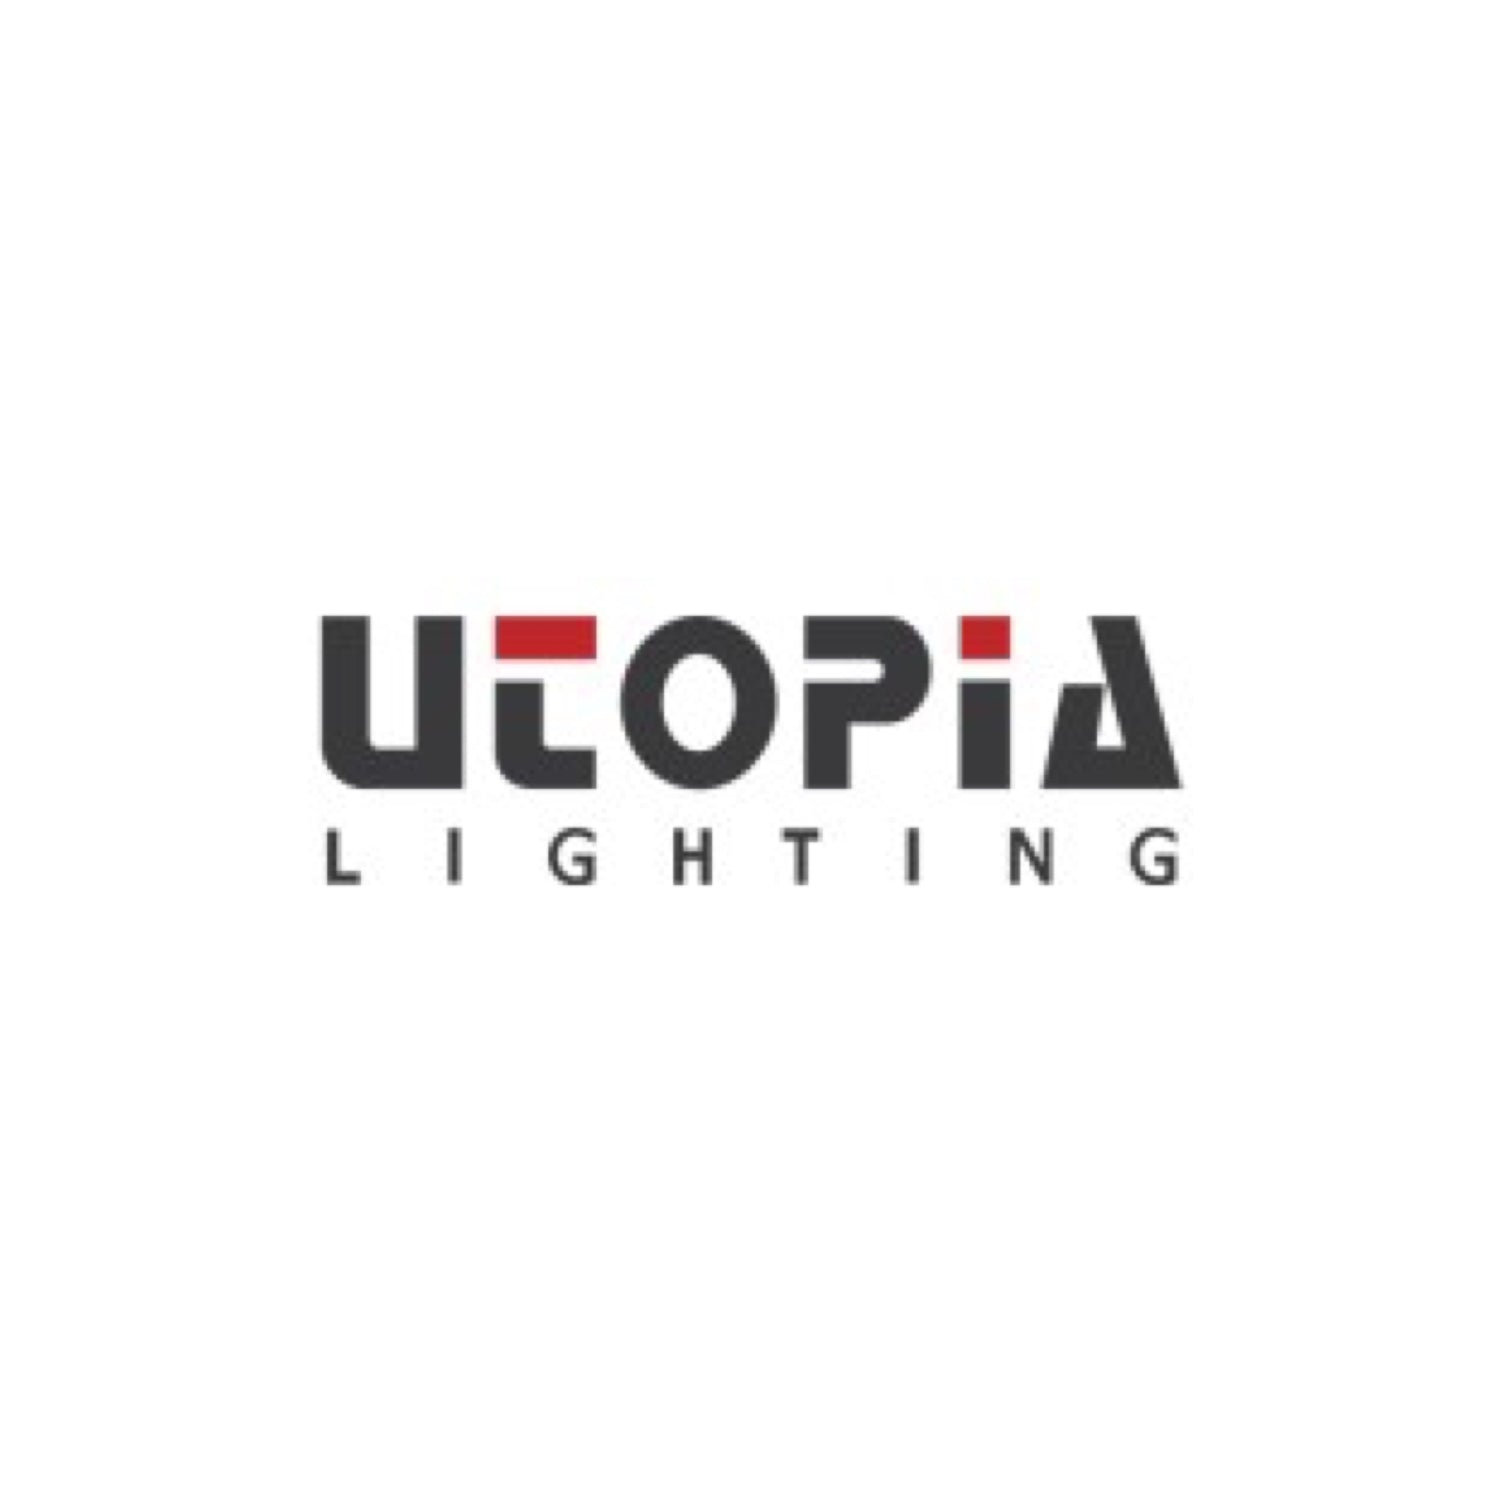 UTOPIA LIGHTING